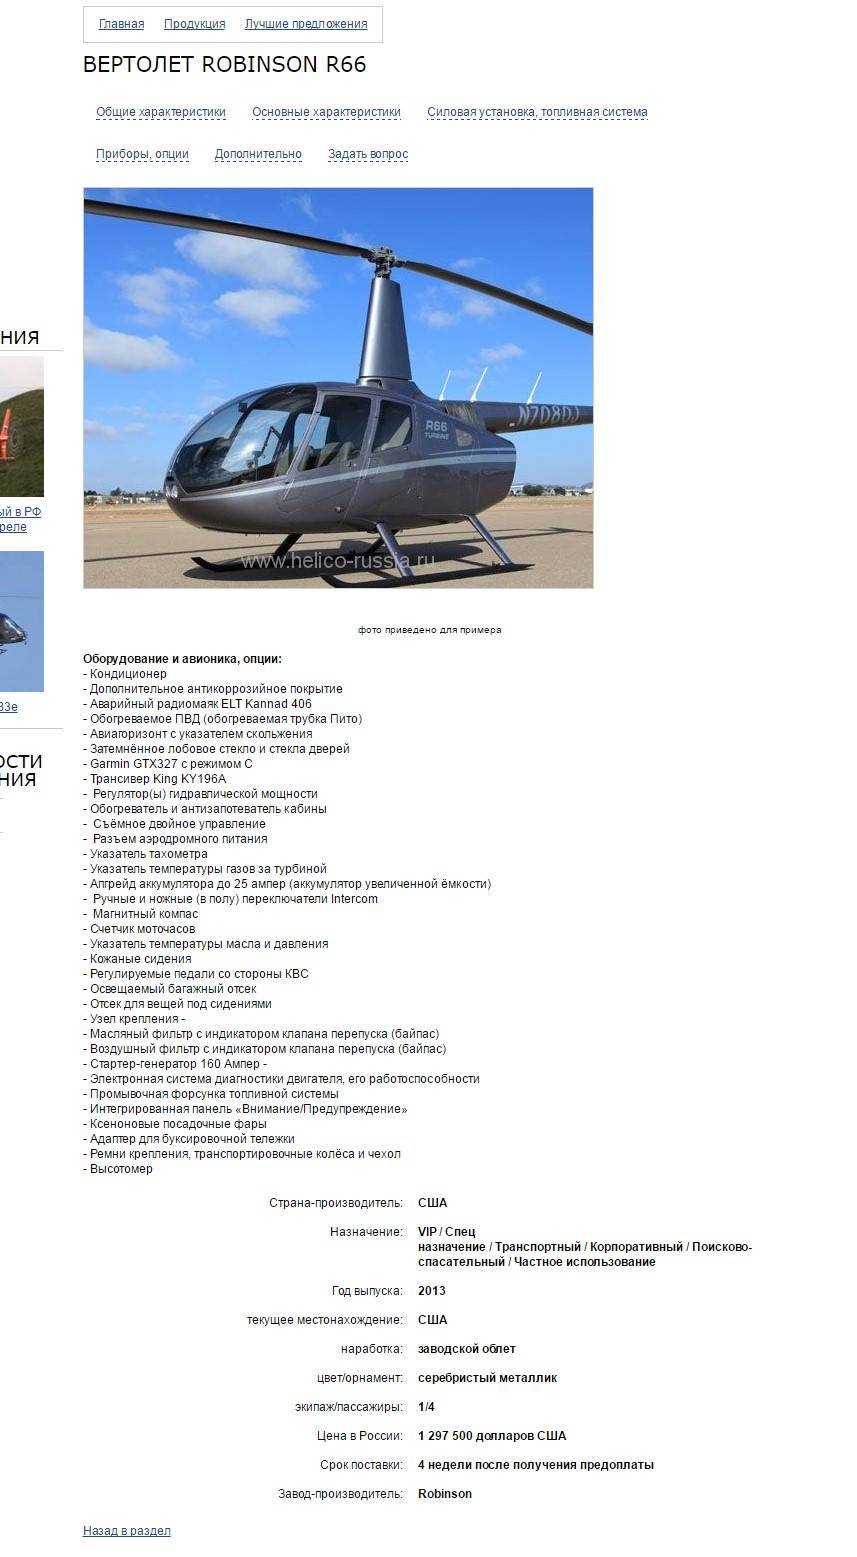 Старая карточка вертолета на сайте helico-russia.ru